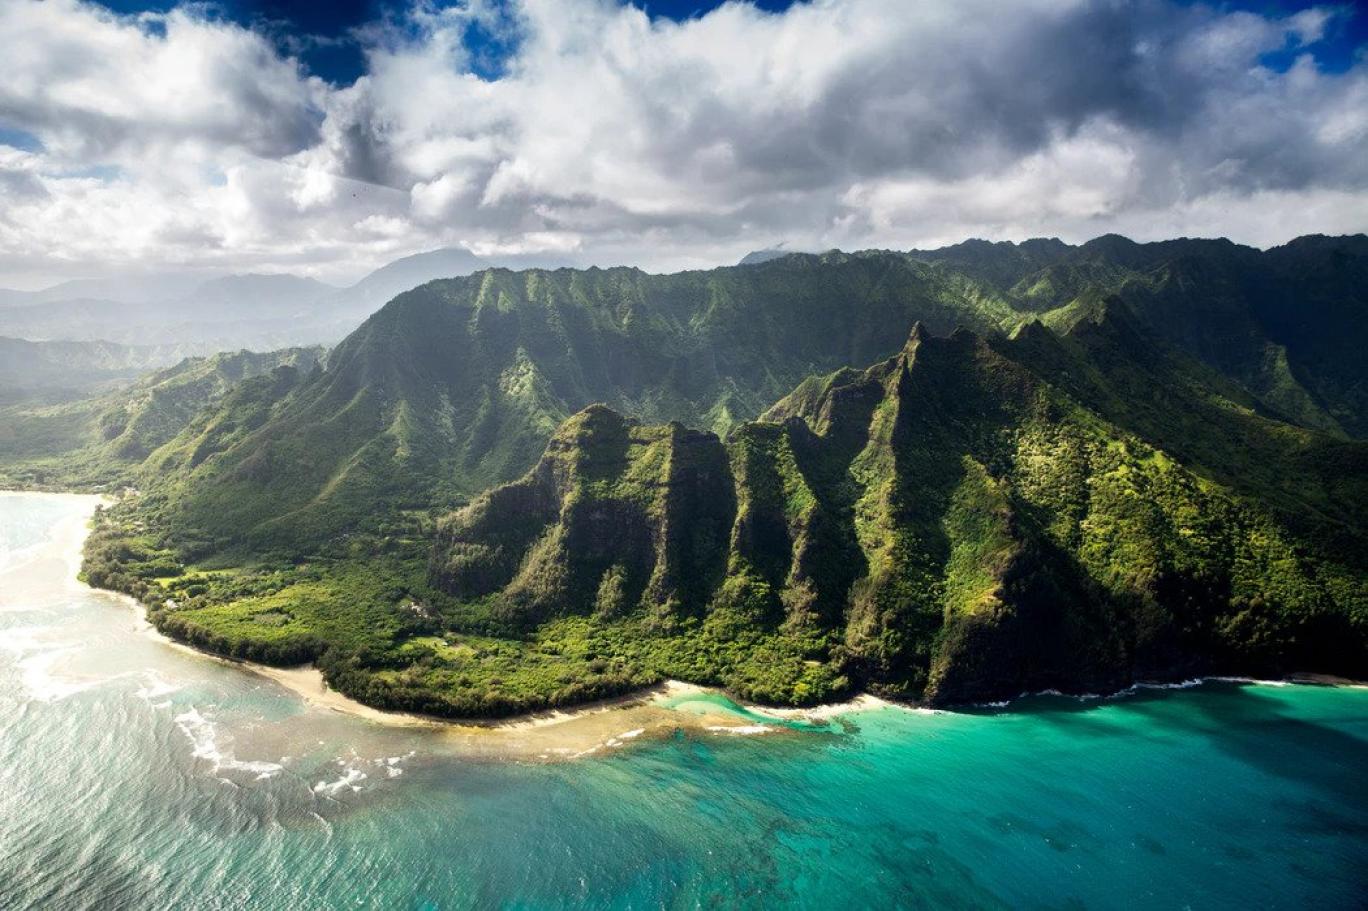 Ünlü milyarder, Kauai'deki Larsen Plajı'nda bulunan 3 parsellik yalı boyundaki arsayı kâr amacı gütmeyen Waioli Corporation'dan hiç düşünmeden aldı. Haberlere göre plaja ulaşan yol satışa dahil edilmedi ve halka açık kalacak. 